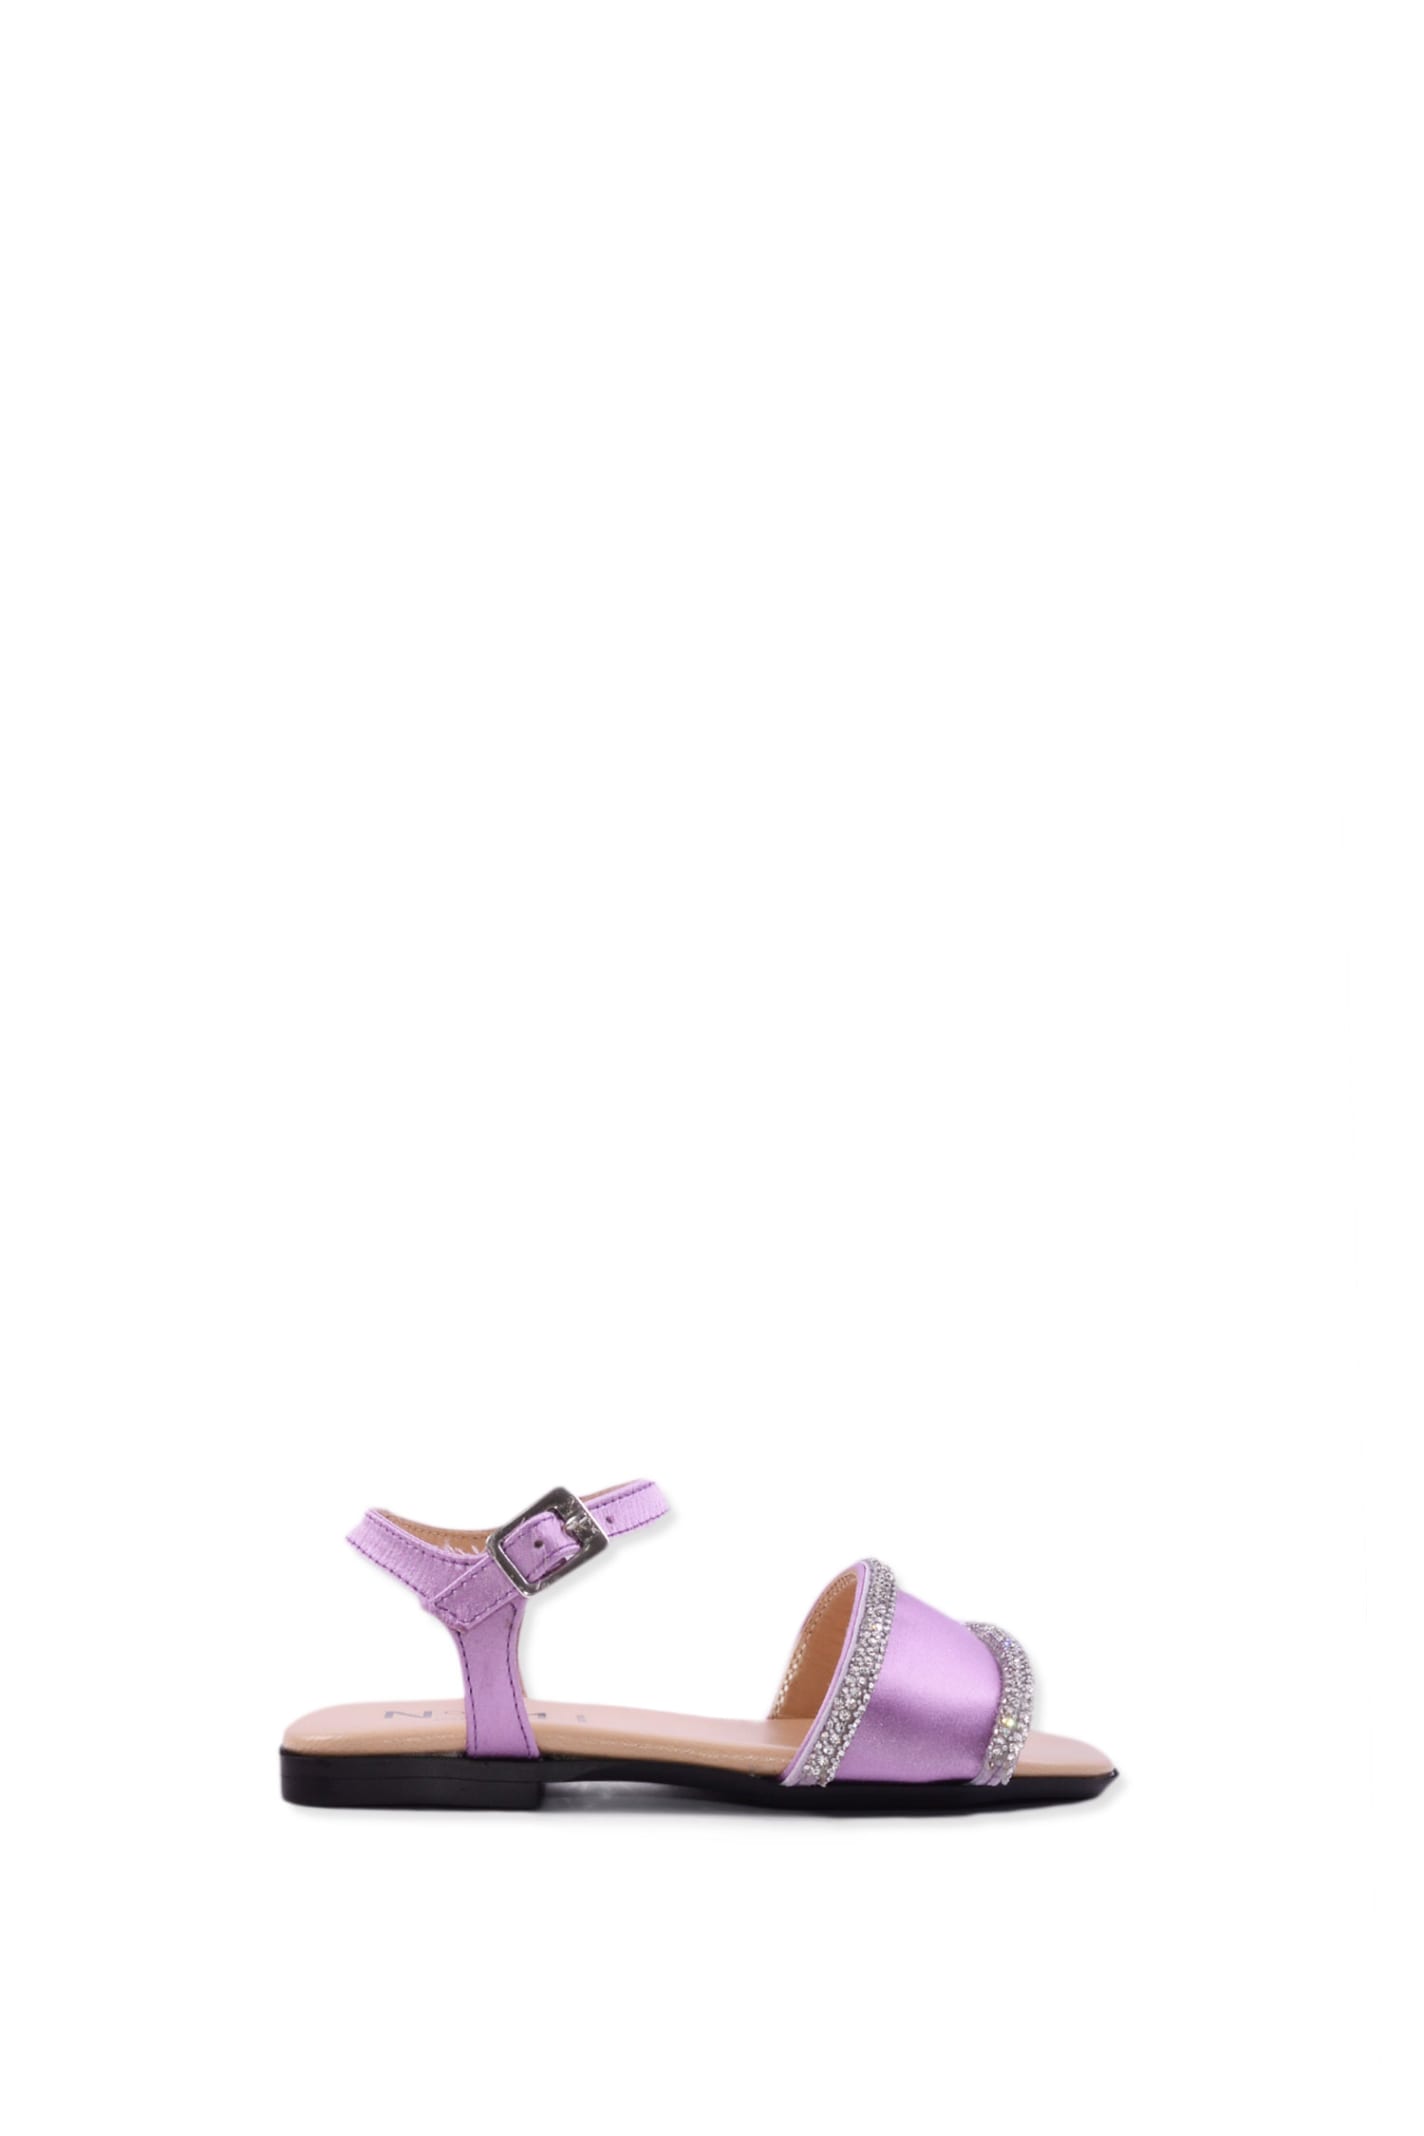 N°21 Kids' Leather Sandals In Violet